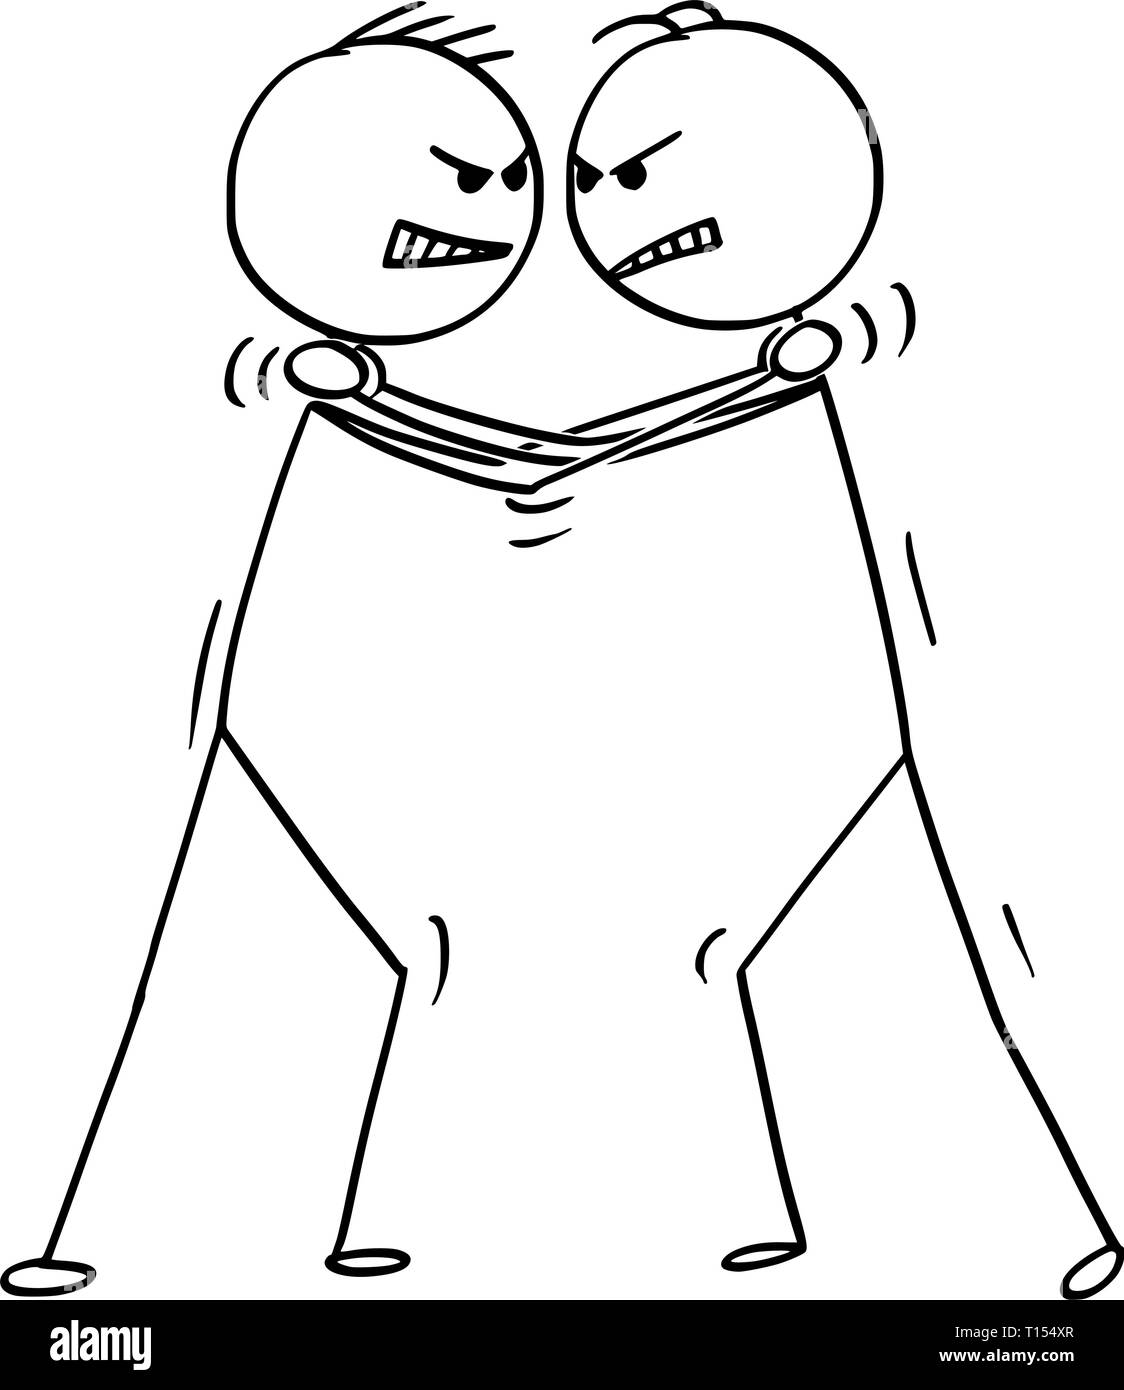 Cartoon stick figure dessin illustration conceptuelle de deux hommes d'affaires tiennent la cou et étrangler ou étranglement de l'adversaire. Illustration de Vecteur